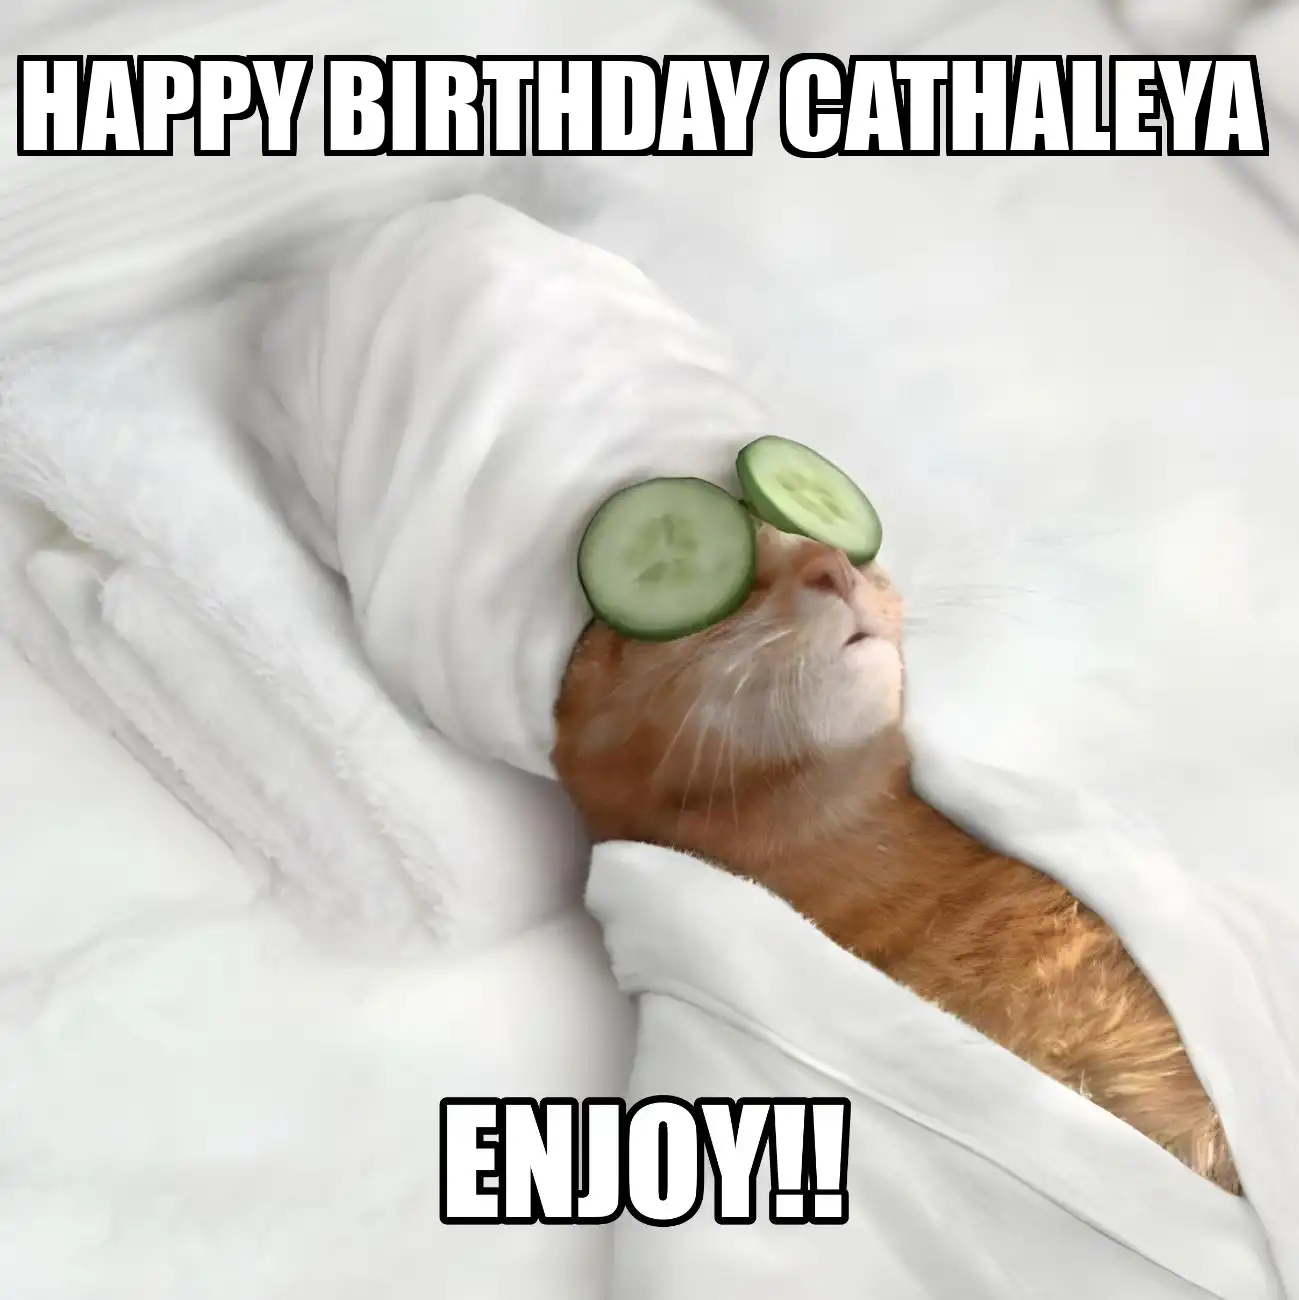 Happy Birthday Cathaleya Enjoy Cat Meme